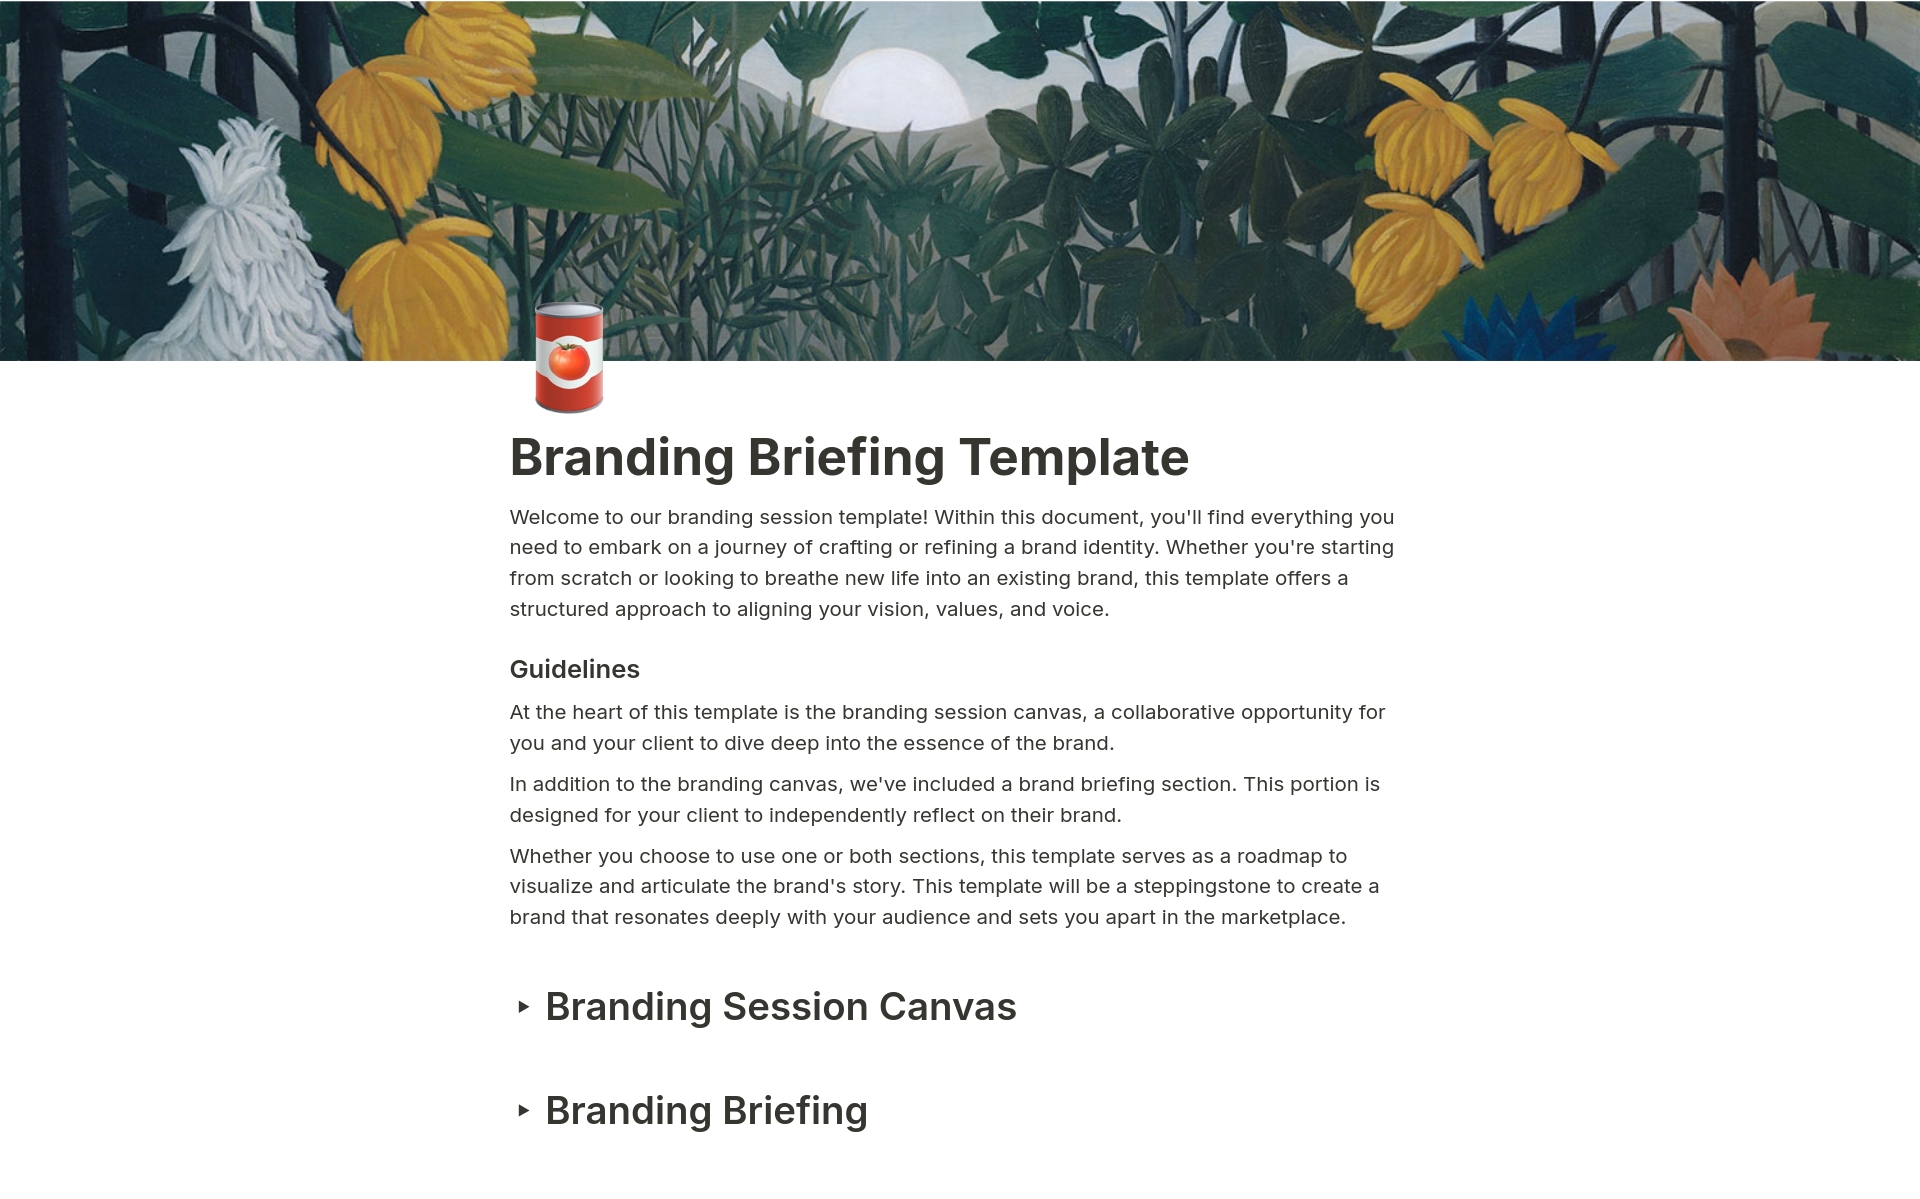 Uma prévia do modelo para Branding Session Canvas & Briefing questions